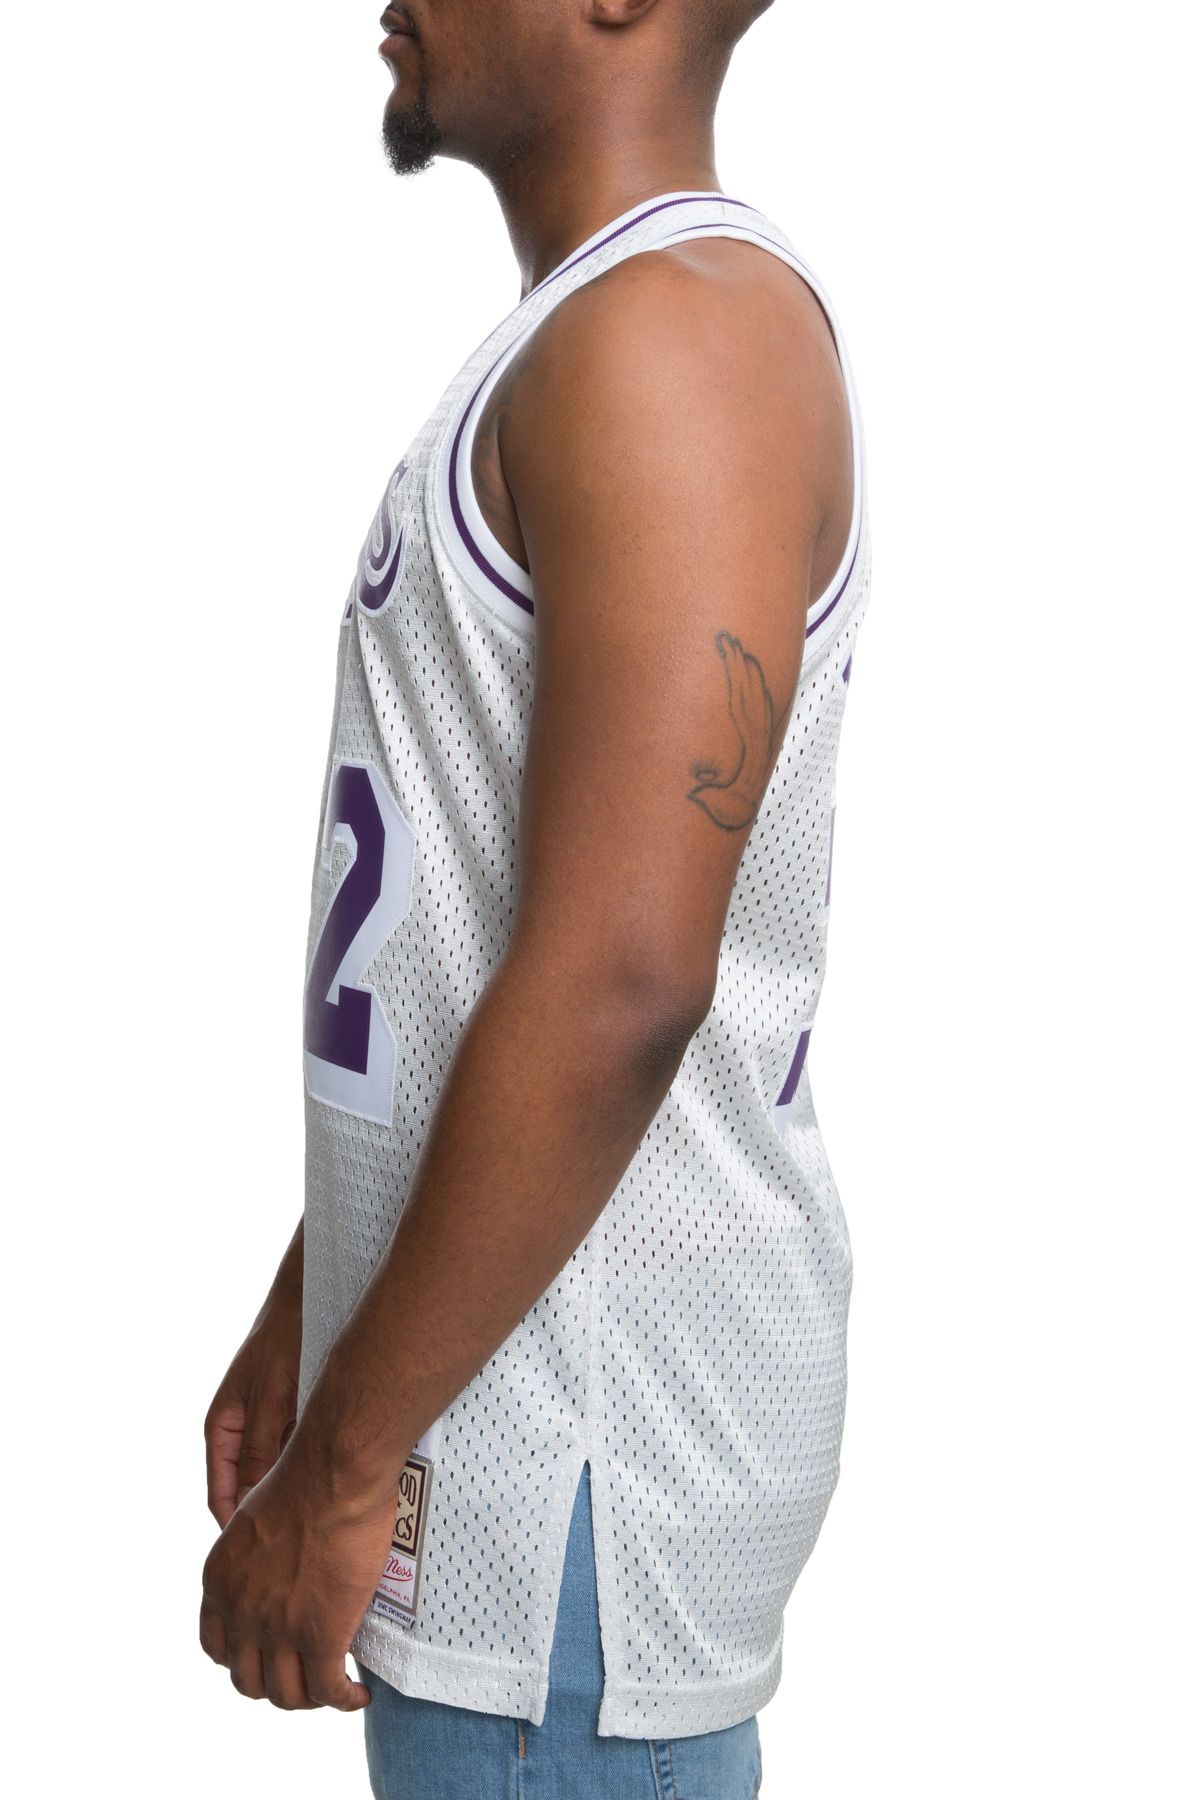 Shirts  Magic Johnson 8s Jersey Champion Nike Sand Knit Lakers